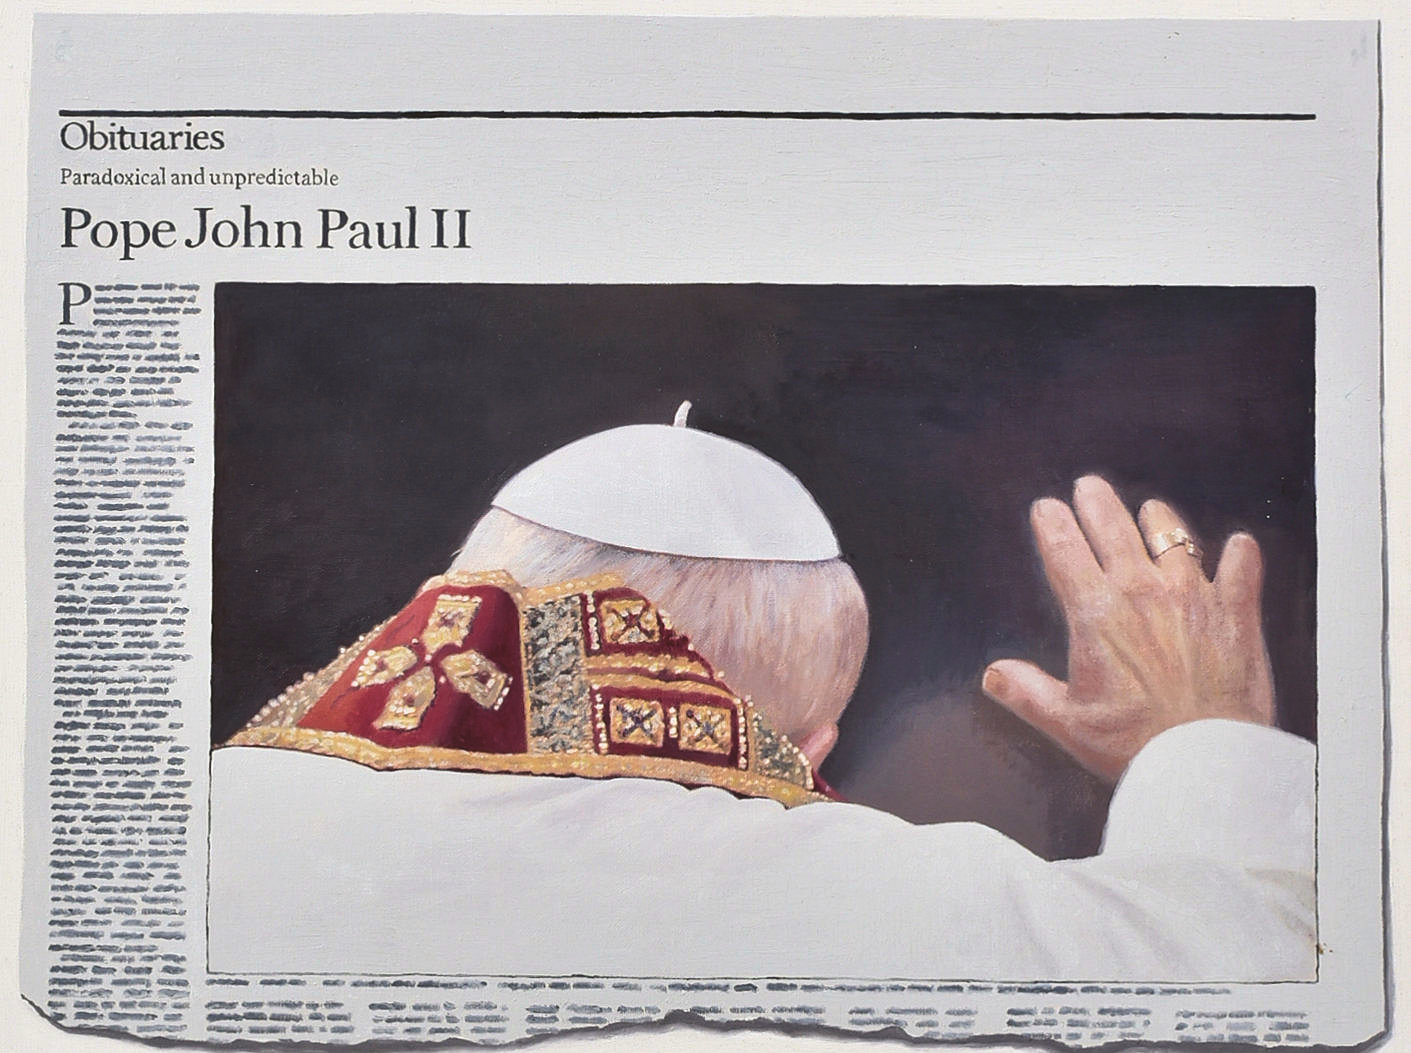 HUGH MENDES (B.1955) - OBITUARIES POPE JOHN PAUL II, 2006